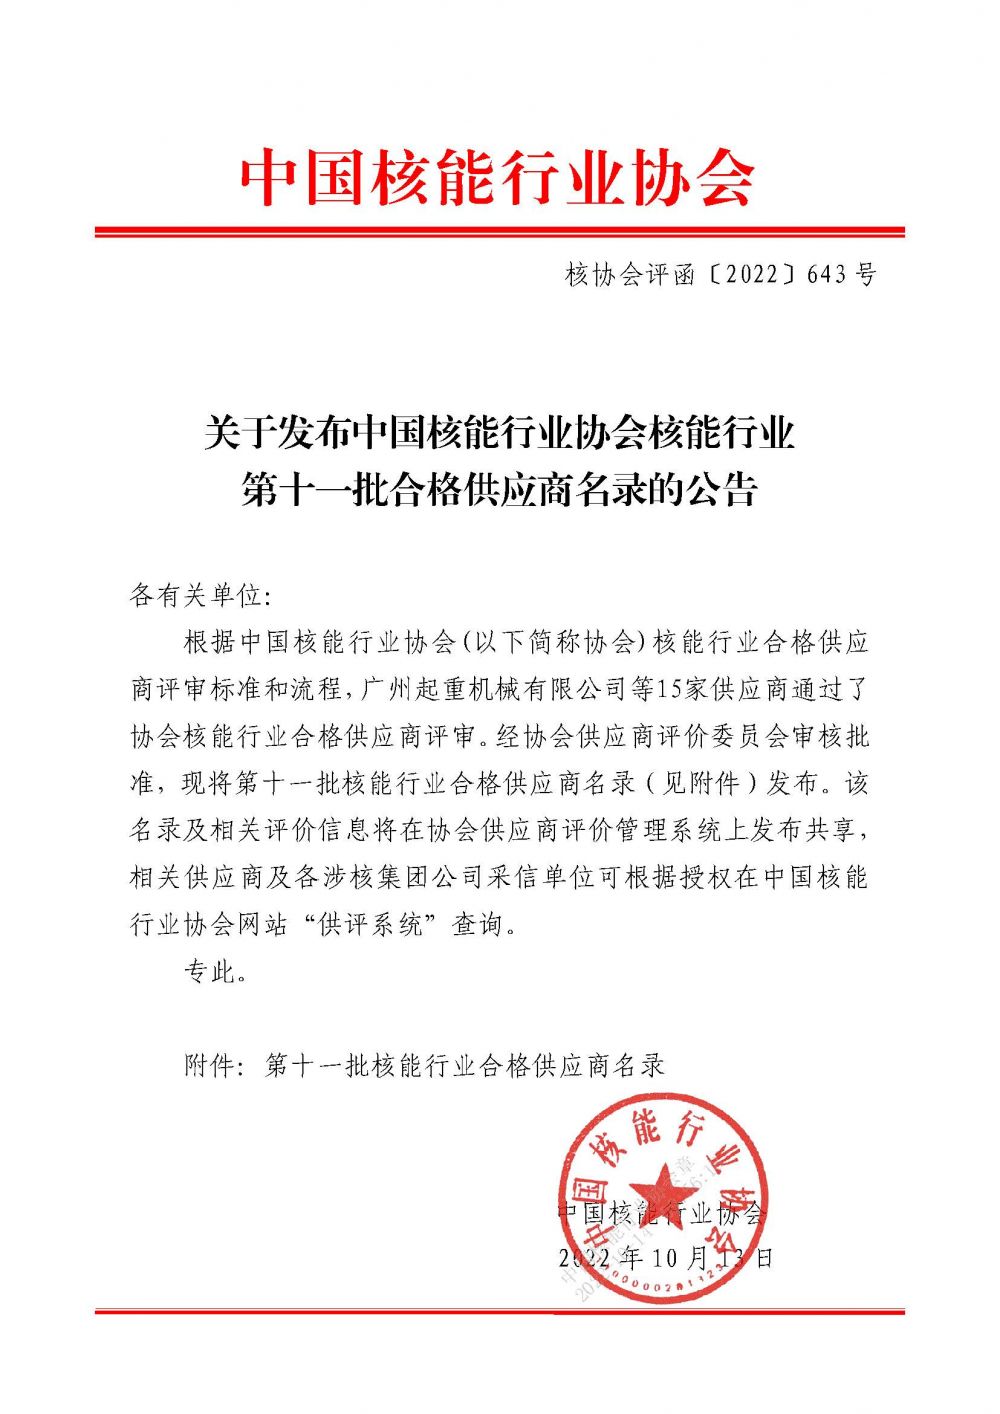 关于发布中国核能行业协会核能行业第十一批合格供应商名录的公告_页面_1.jpg